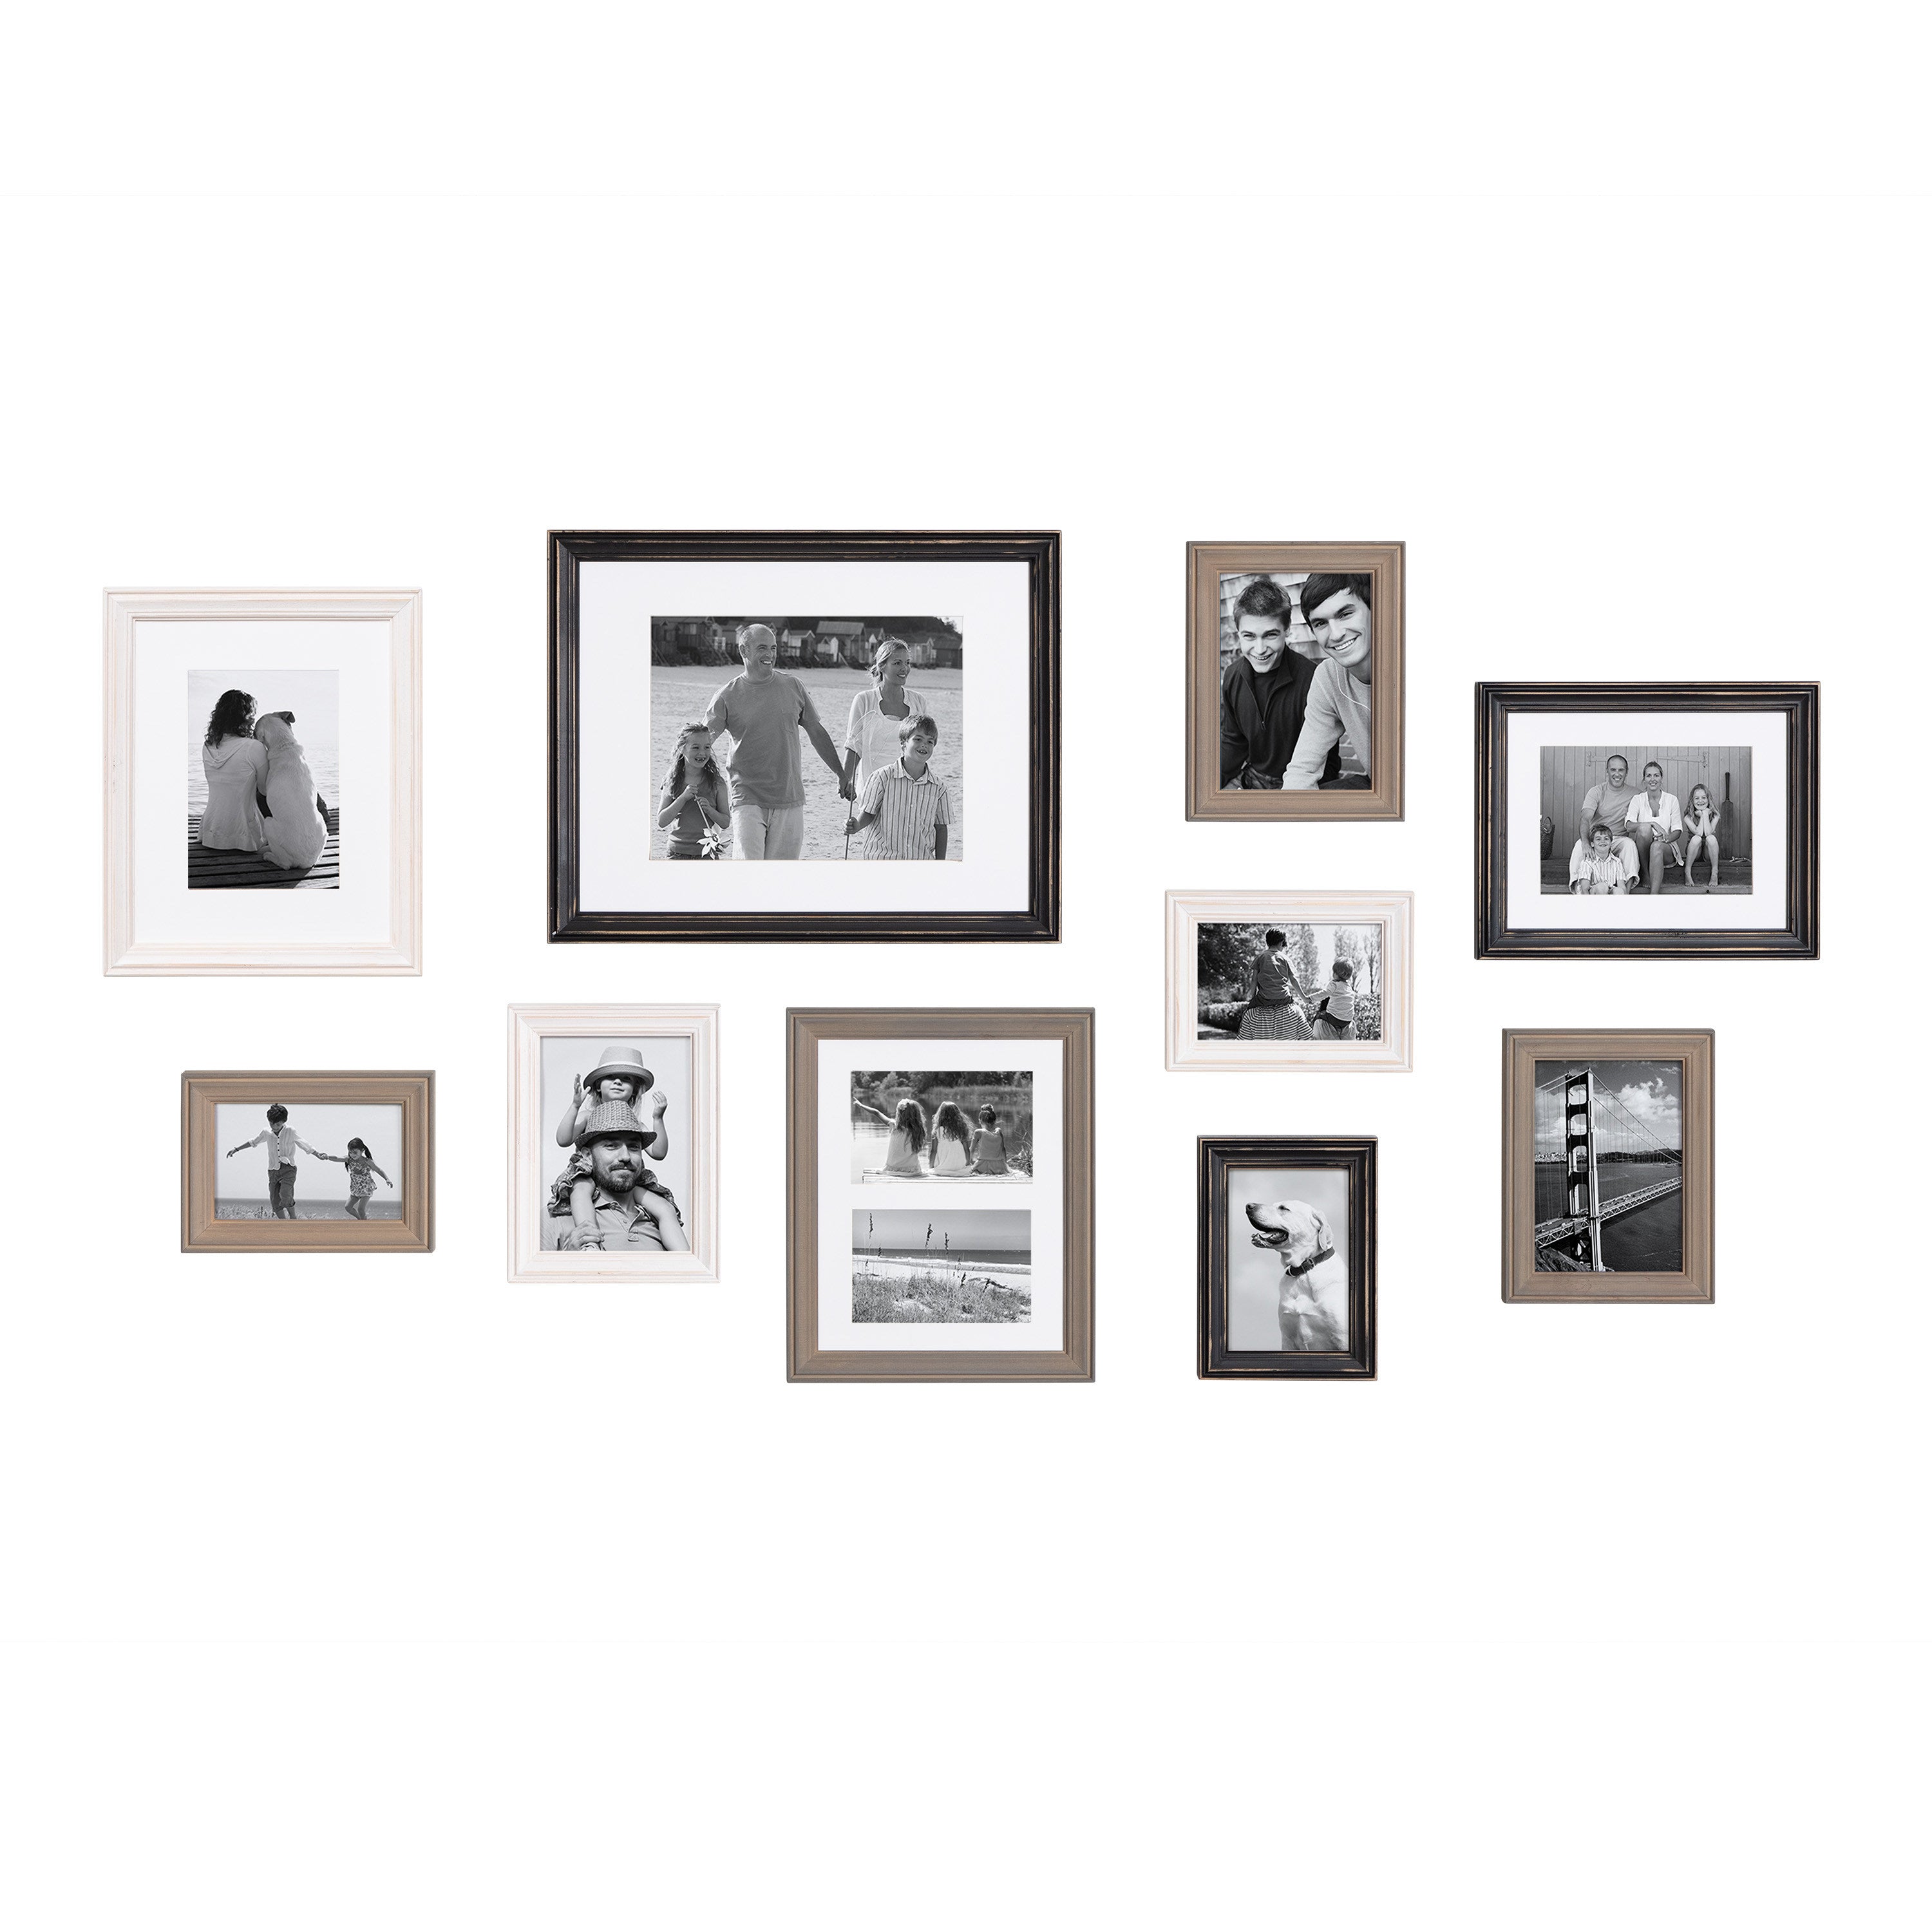 Black & White Paw Print Frame - 4 x 6, Hobby Lobby